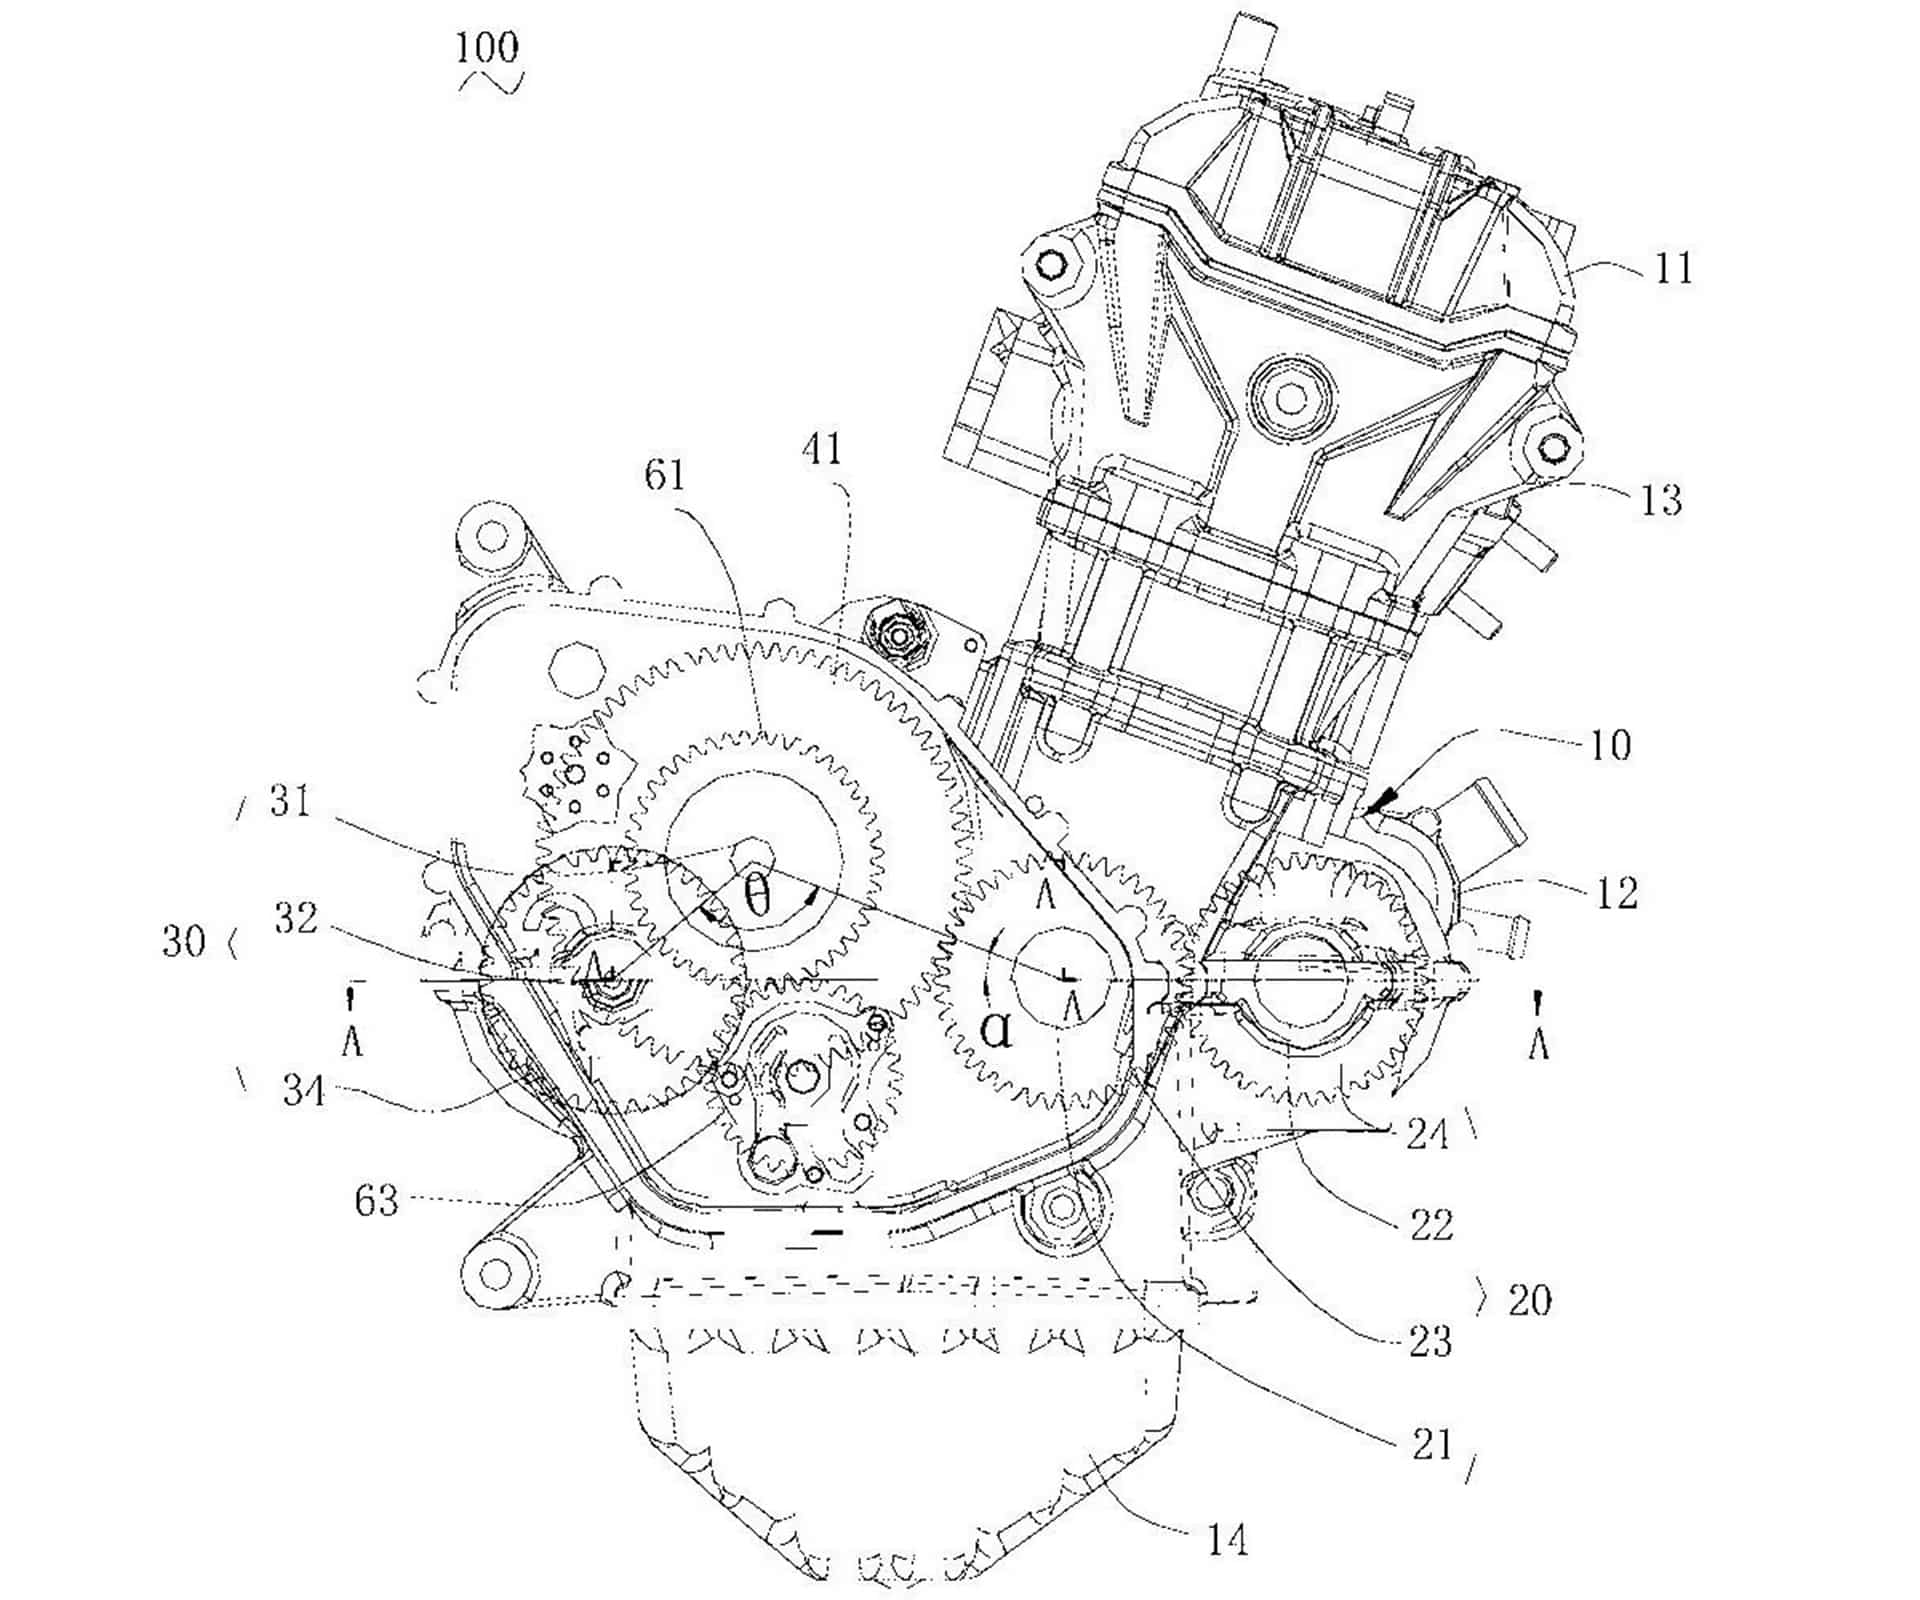 CFMoto da a conocer su nuevo motor tricilíndrico de 675 cc